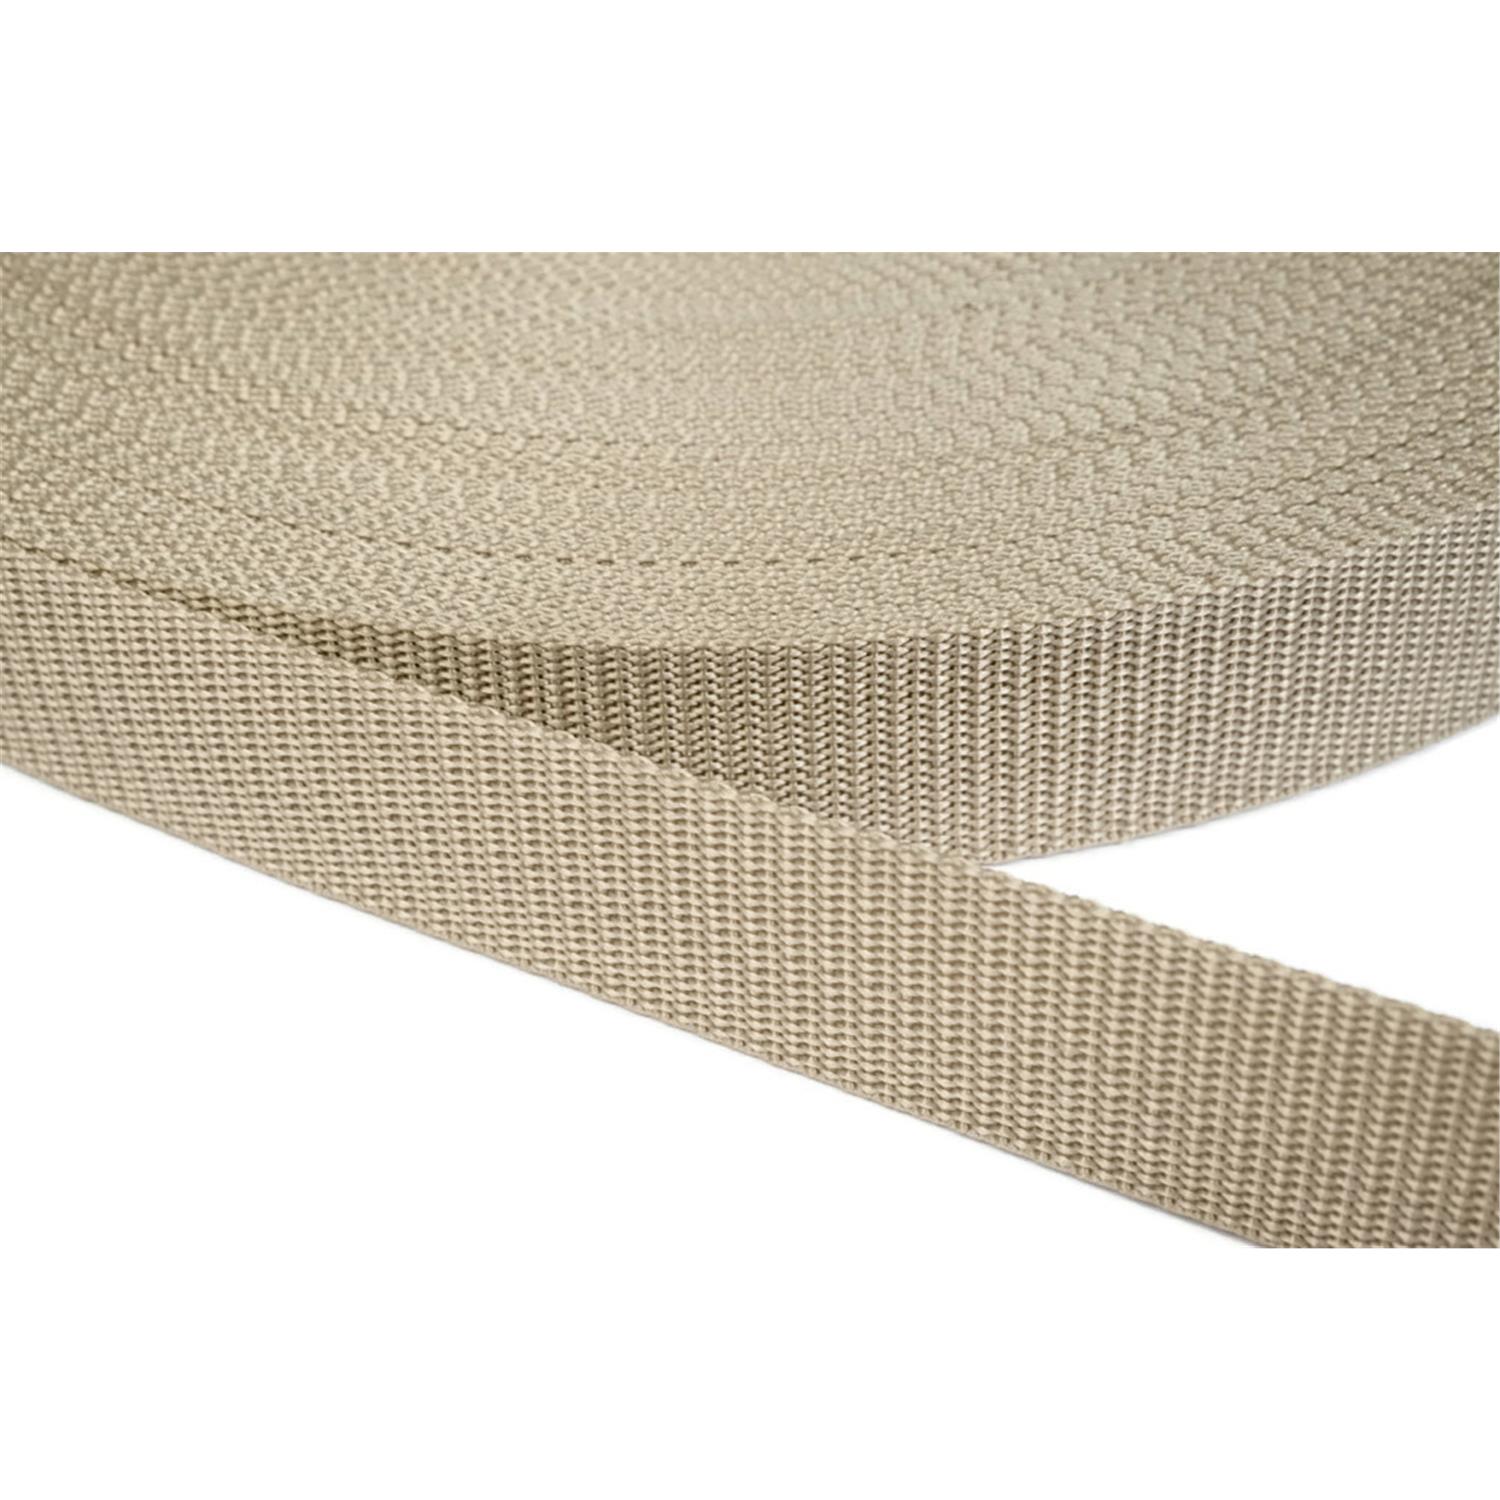 Gurtband 50mm breit aus Polypropylen in 41 Farben 03 - beige 50 Meter